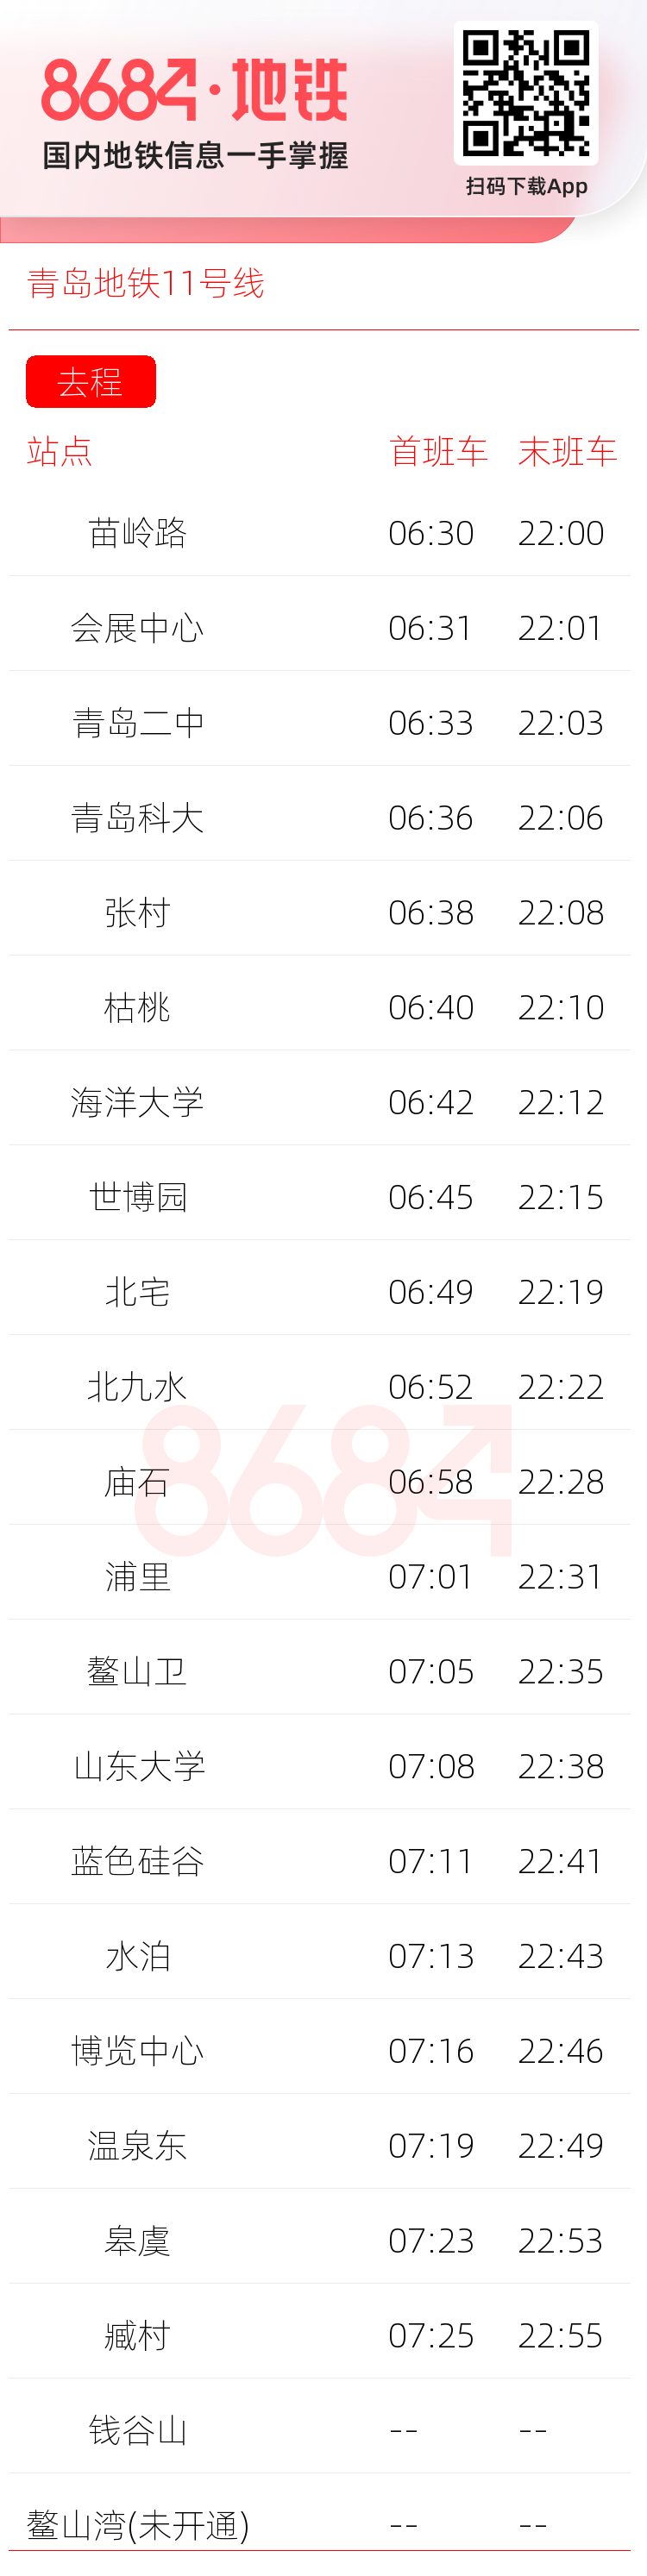 青岛地铁11号线运营时间表